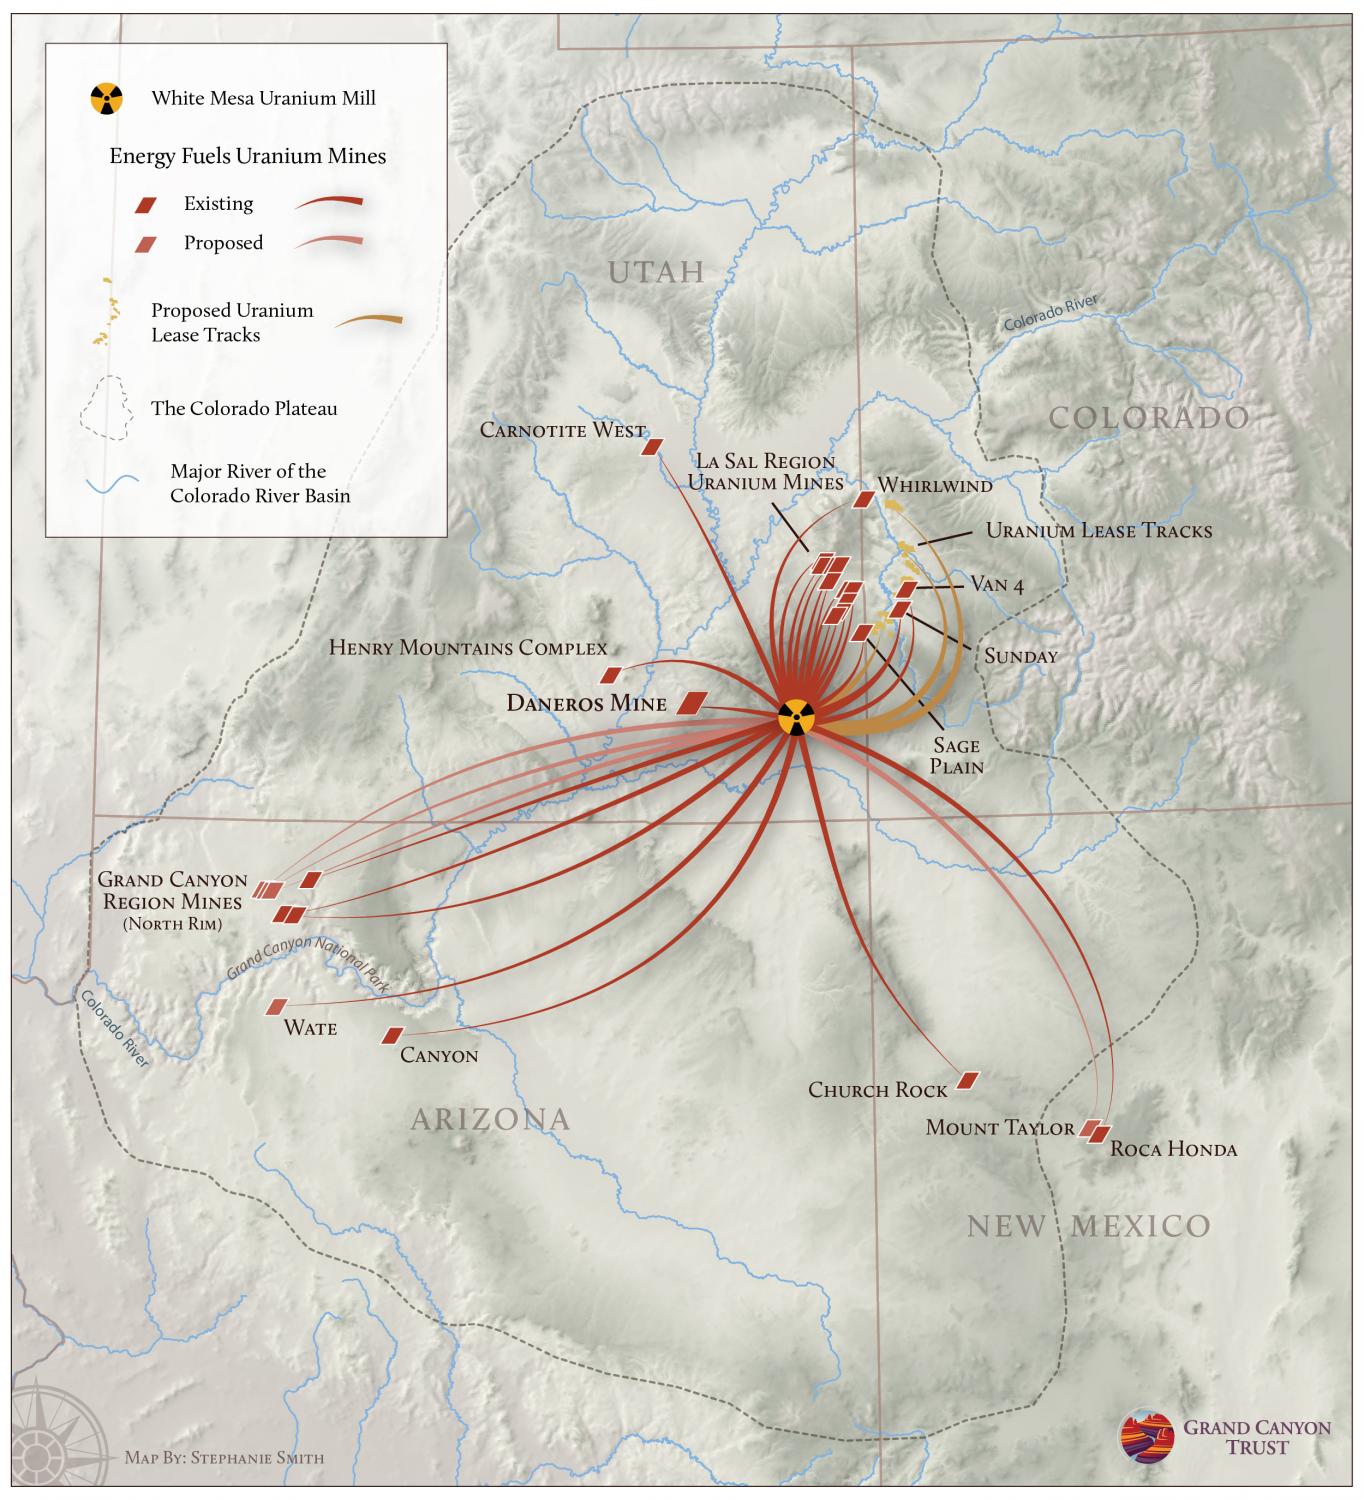 Map of Energy Fuels Inc. uranium mines